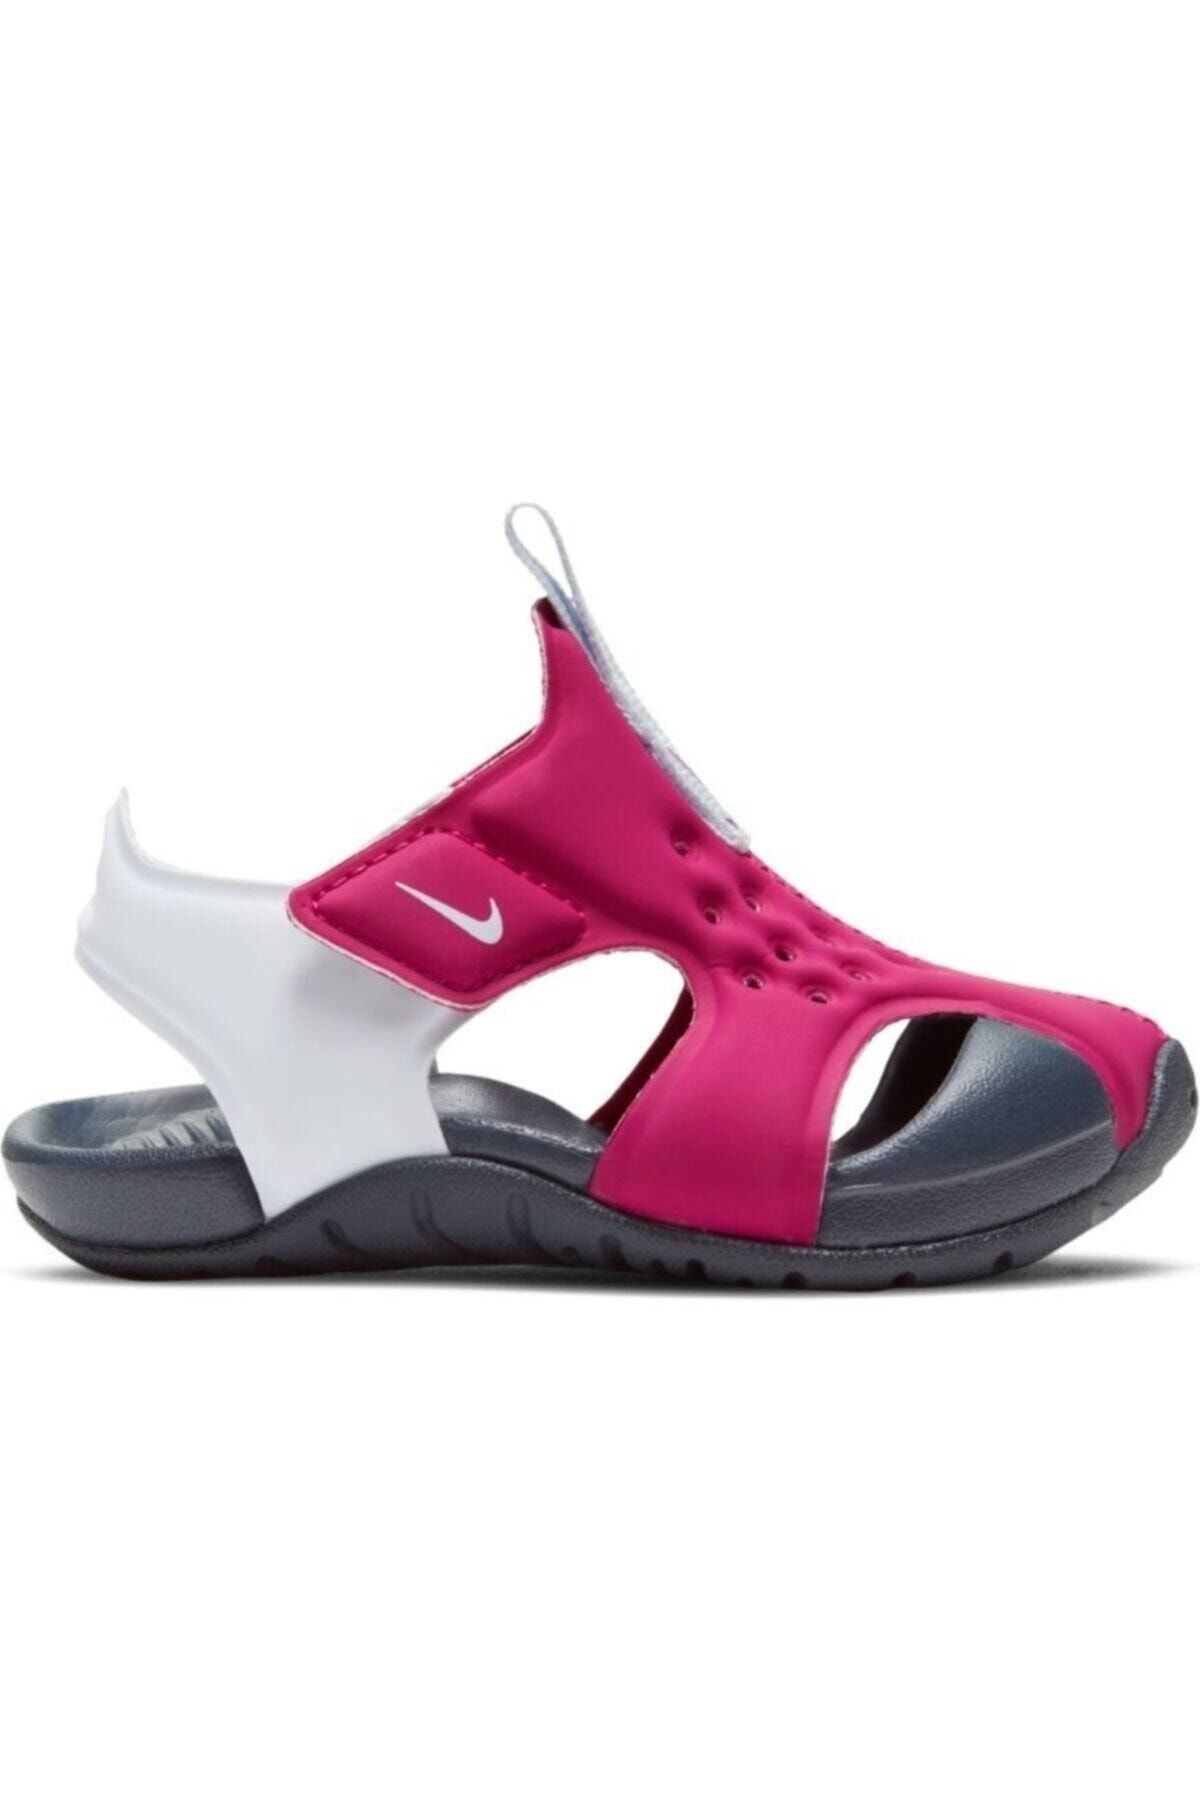 adidas Nike Sunray Protect 2 Pembe Kız Çocuk Sandalet 943826604